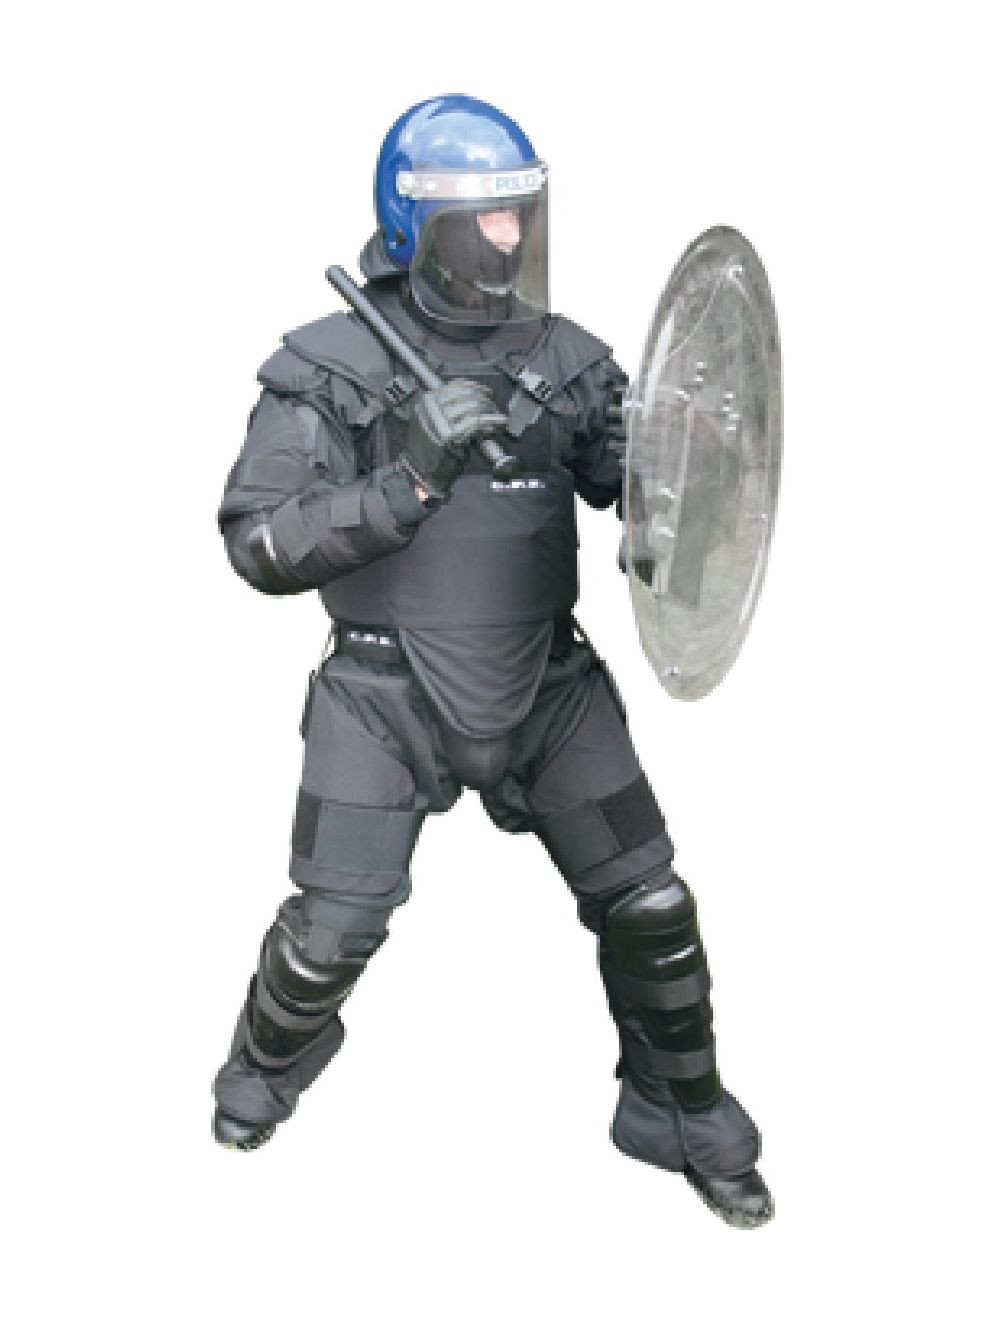 Round Riot Shield  Police Equipment Worldwide